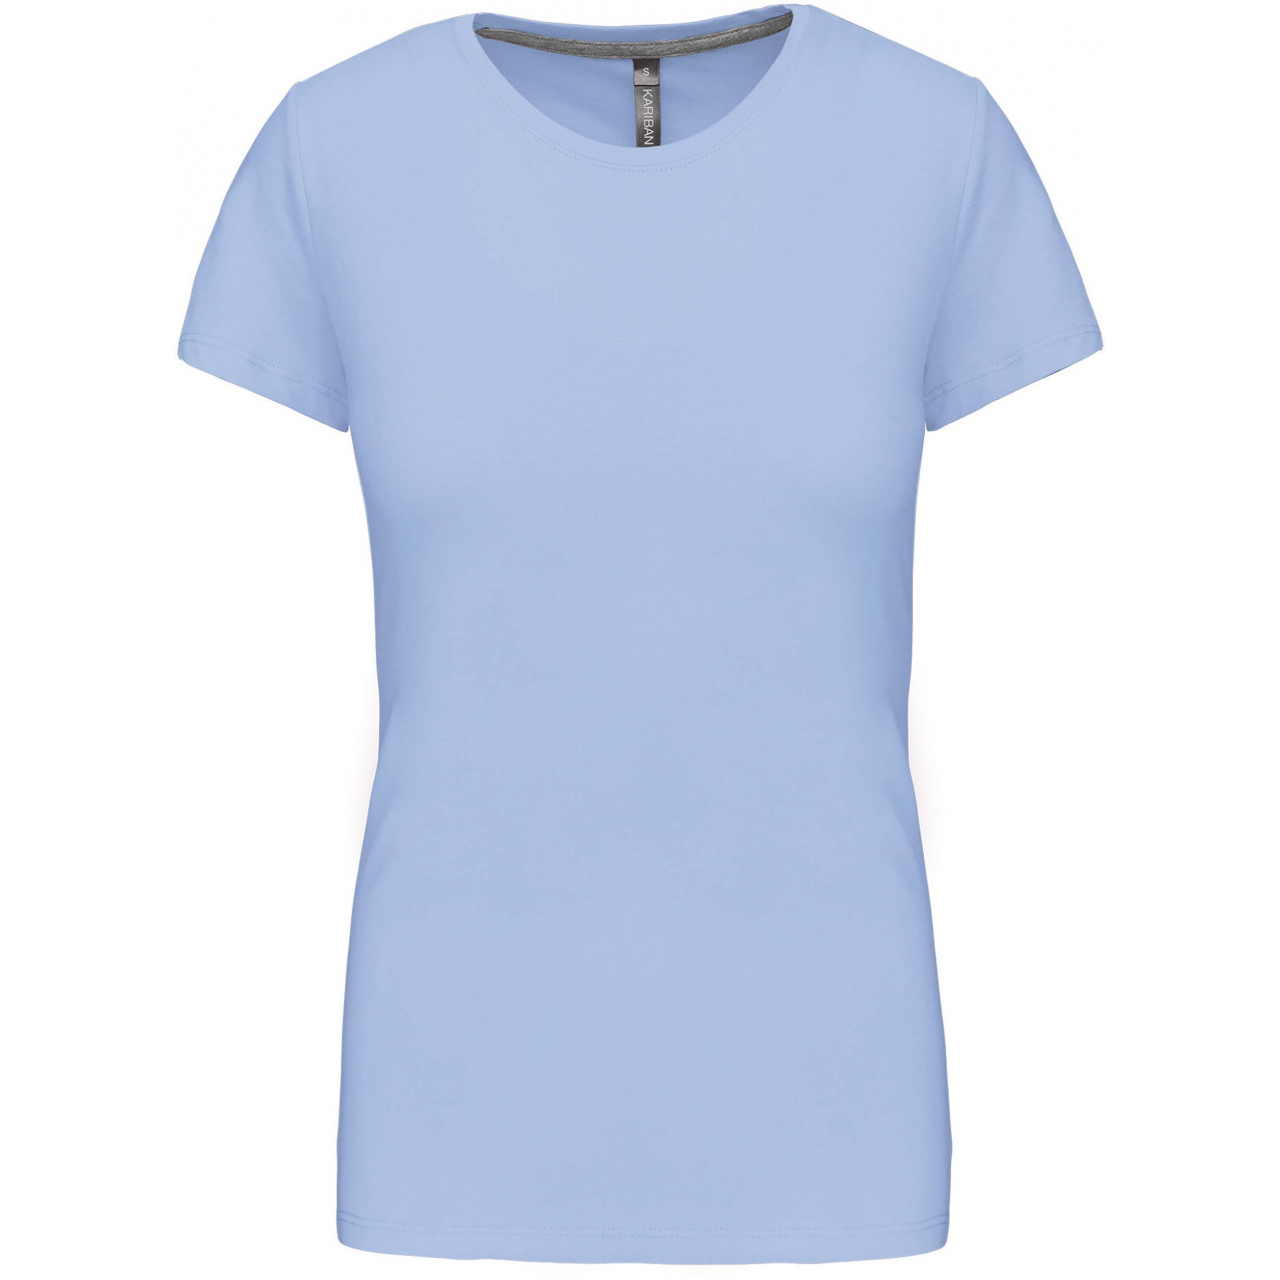 Dámské tričko Kariban s krátkým rukávem - světle modré, XL